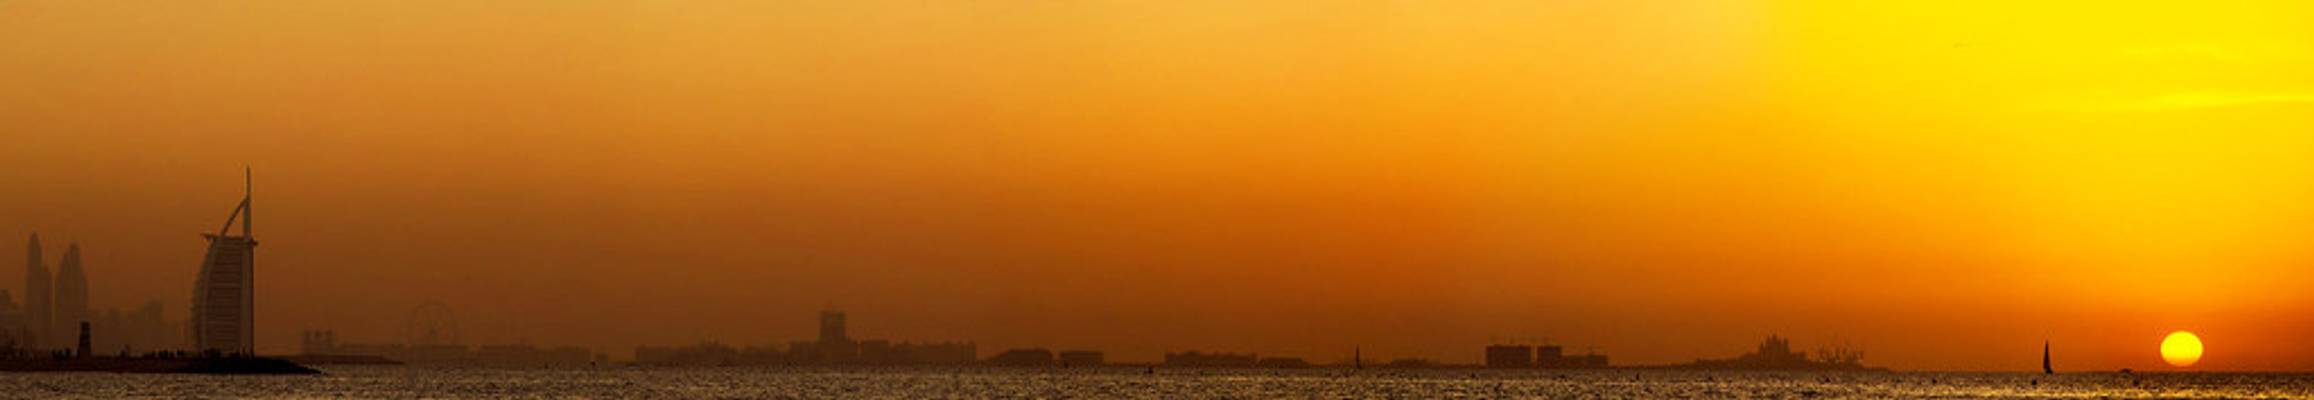 Sunset at Jumeirah beach, Dubai